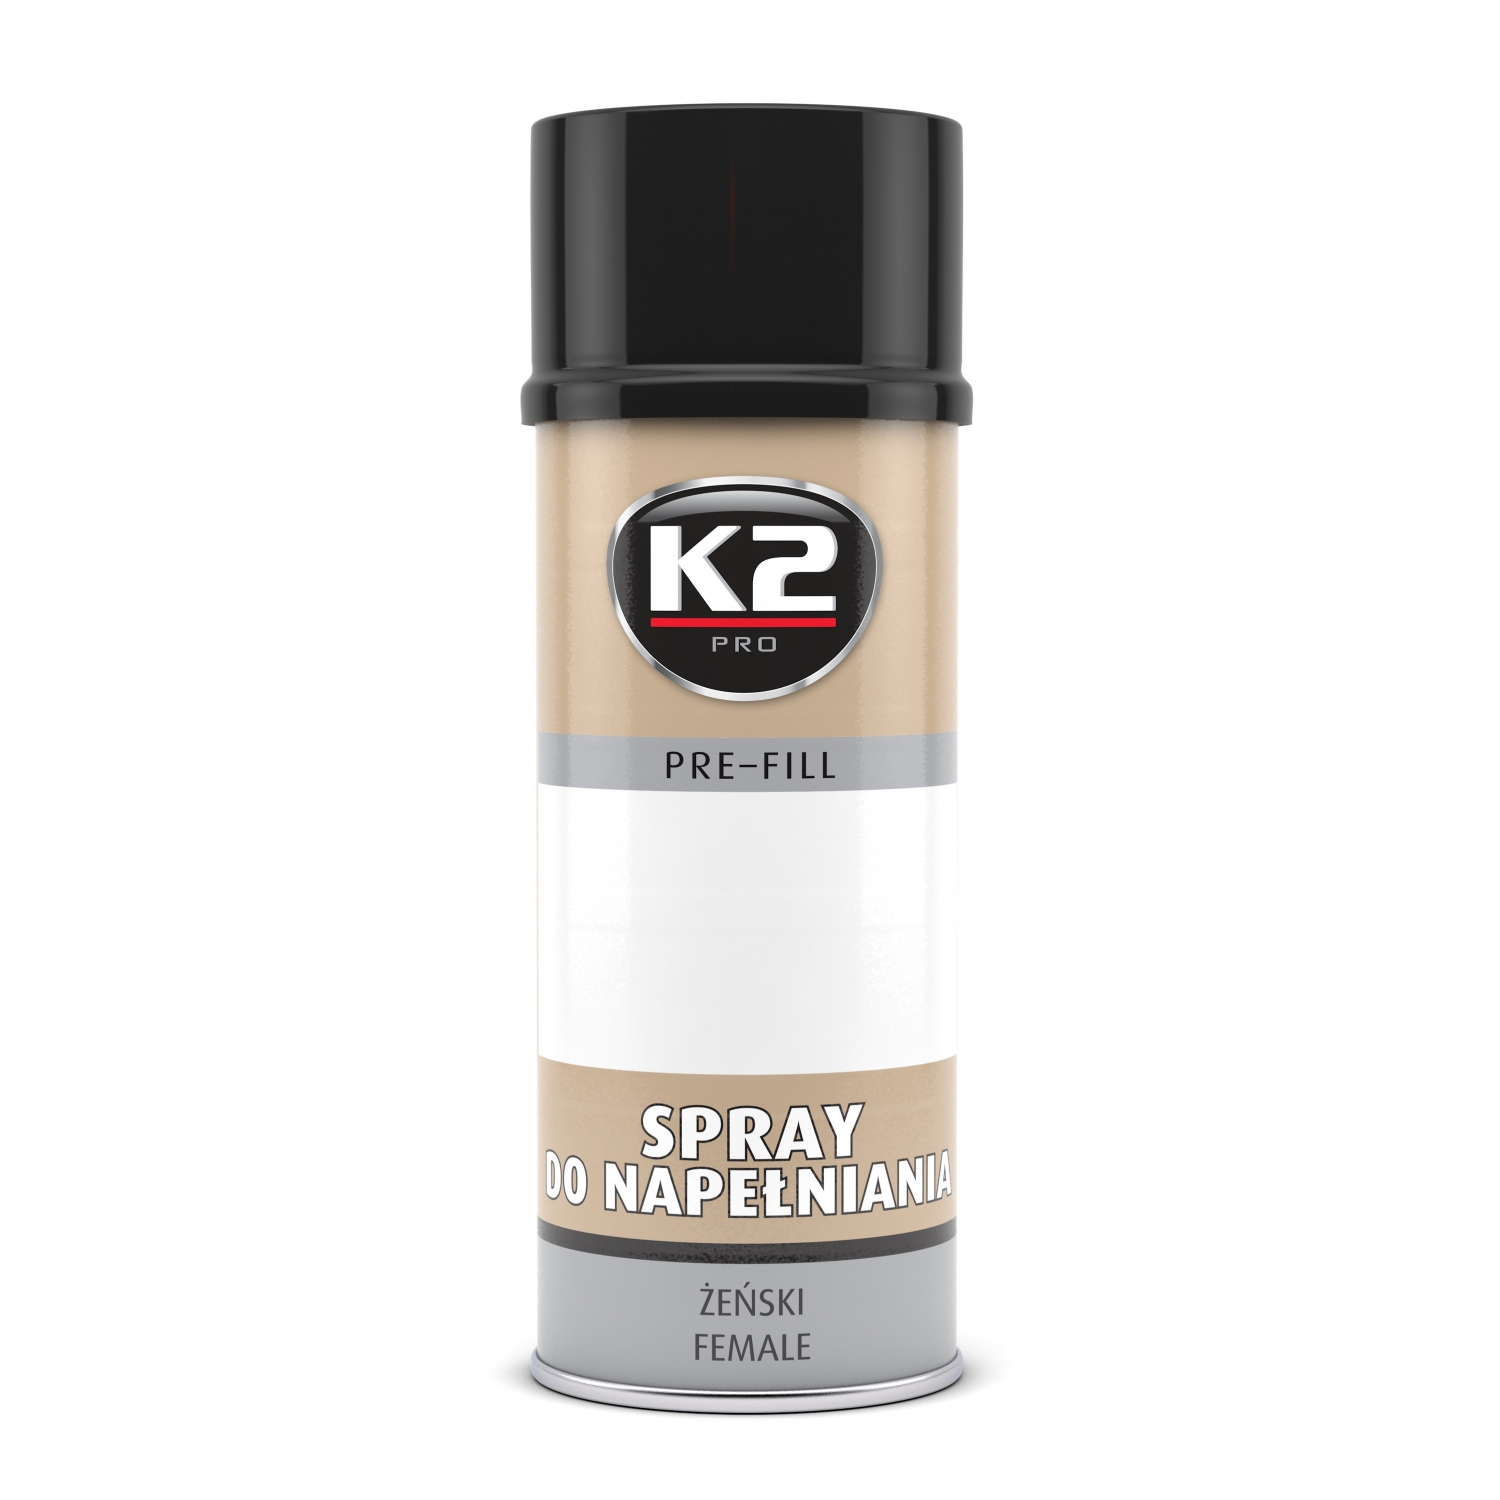 13035-k2-spray-do-napelniania-pre-fill-400ml